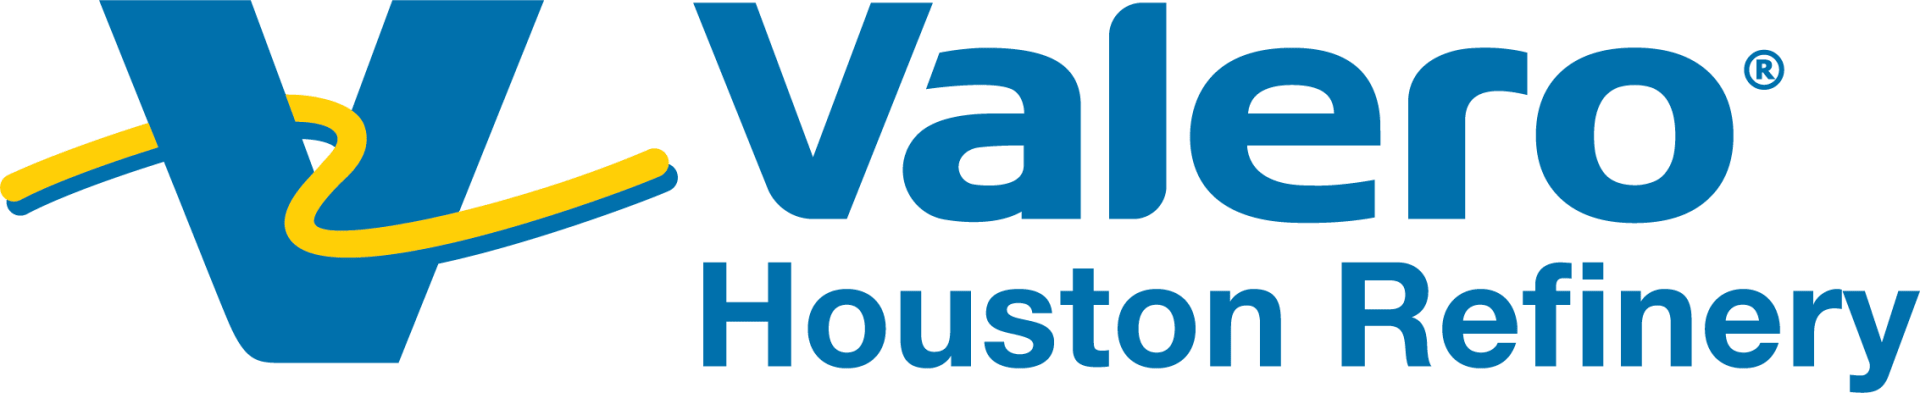 Valero Houston Refinery